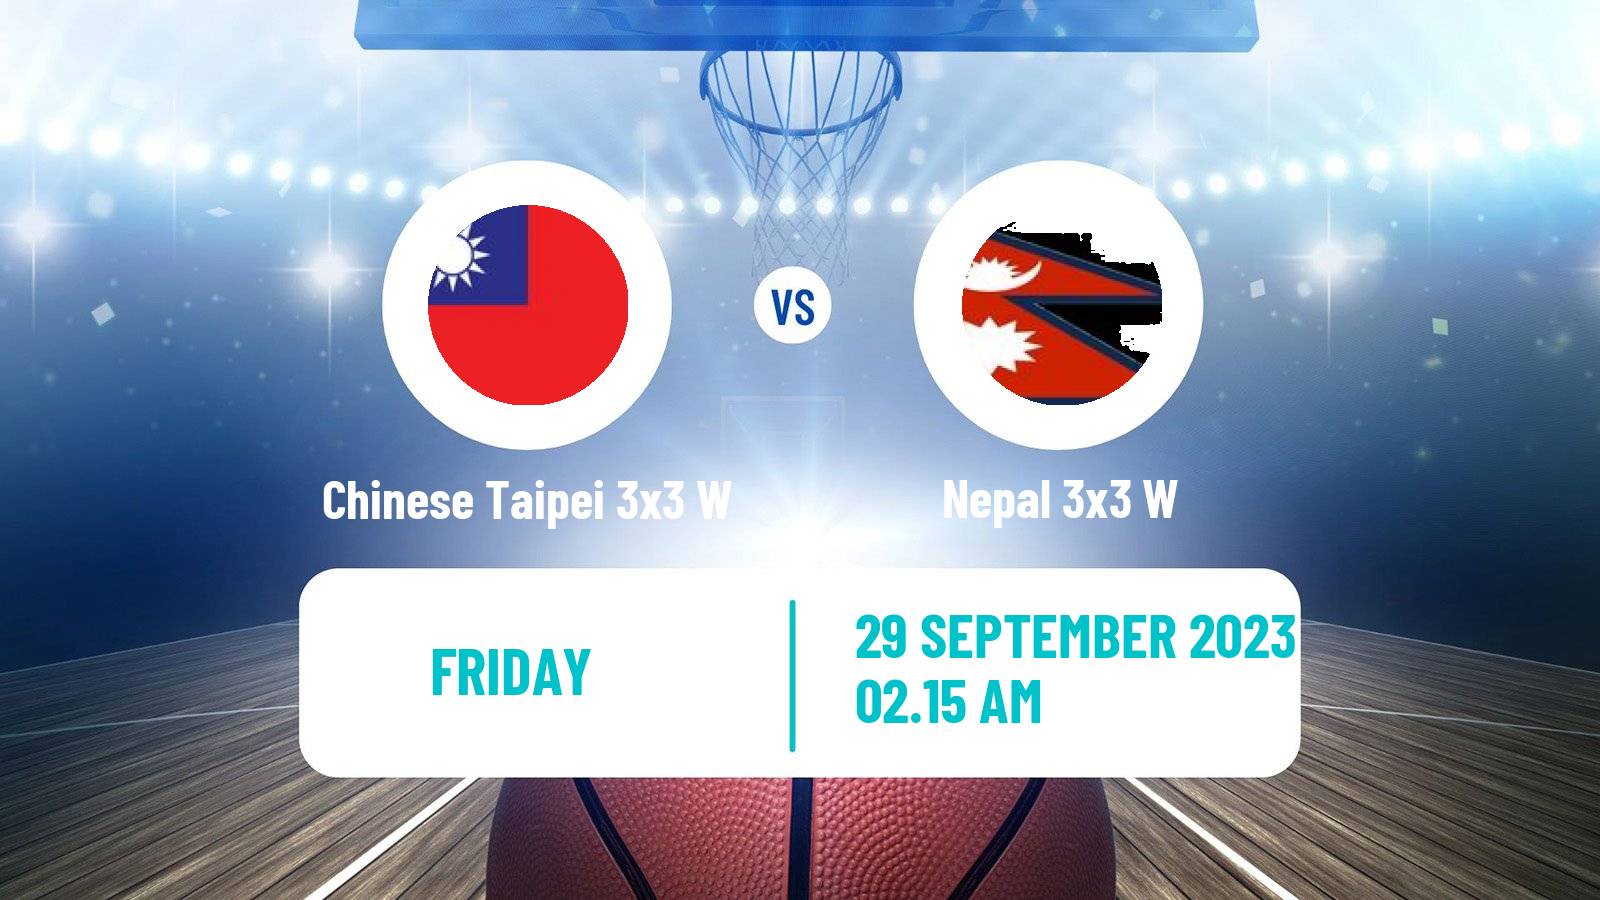 Basketball Asian Games Basketball 3x3 Women Chinese Taipei 3x3 W - Nepal 3x3 W